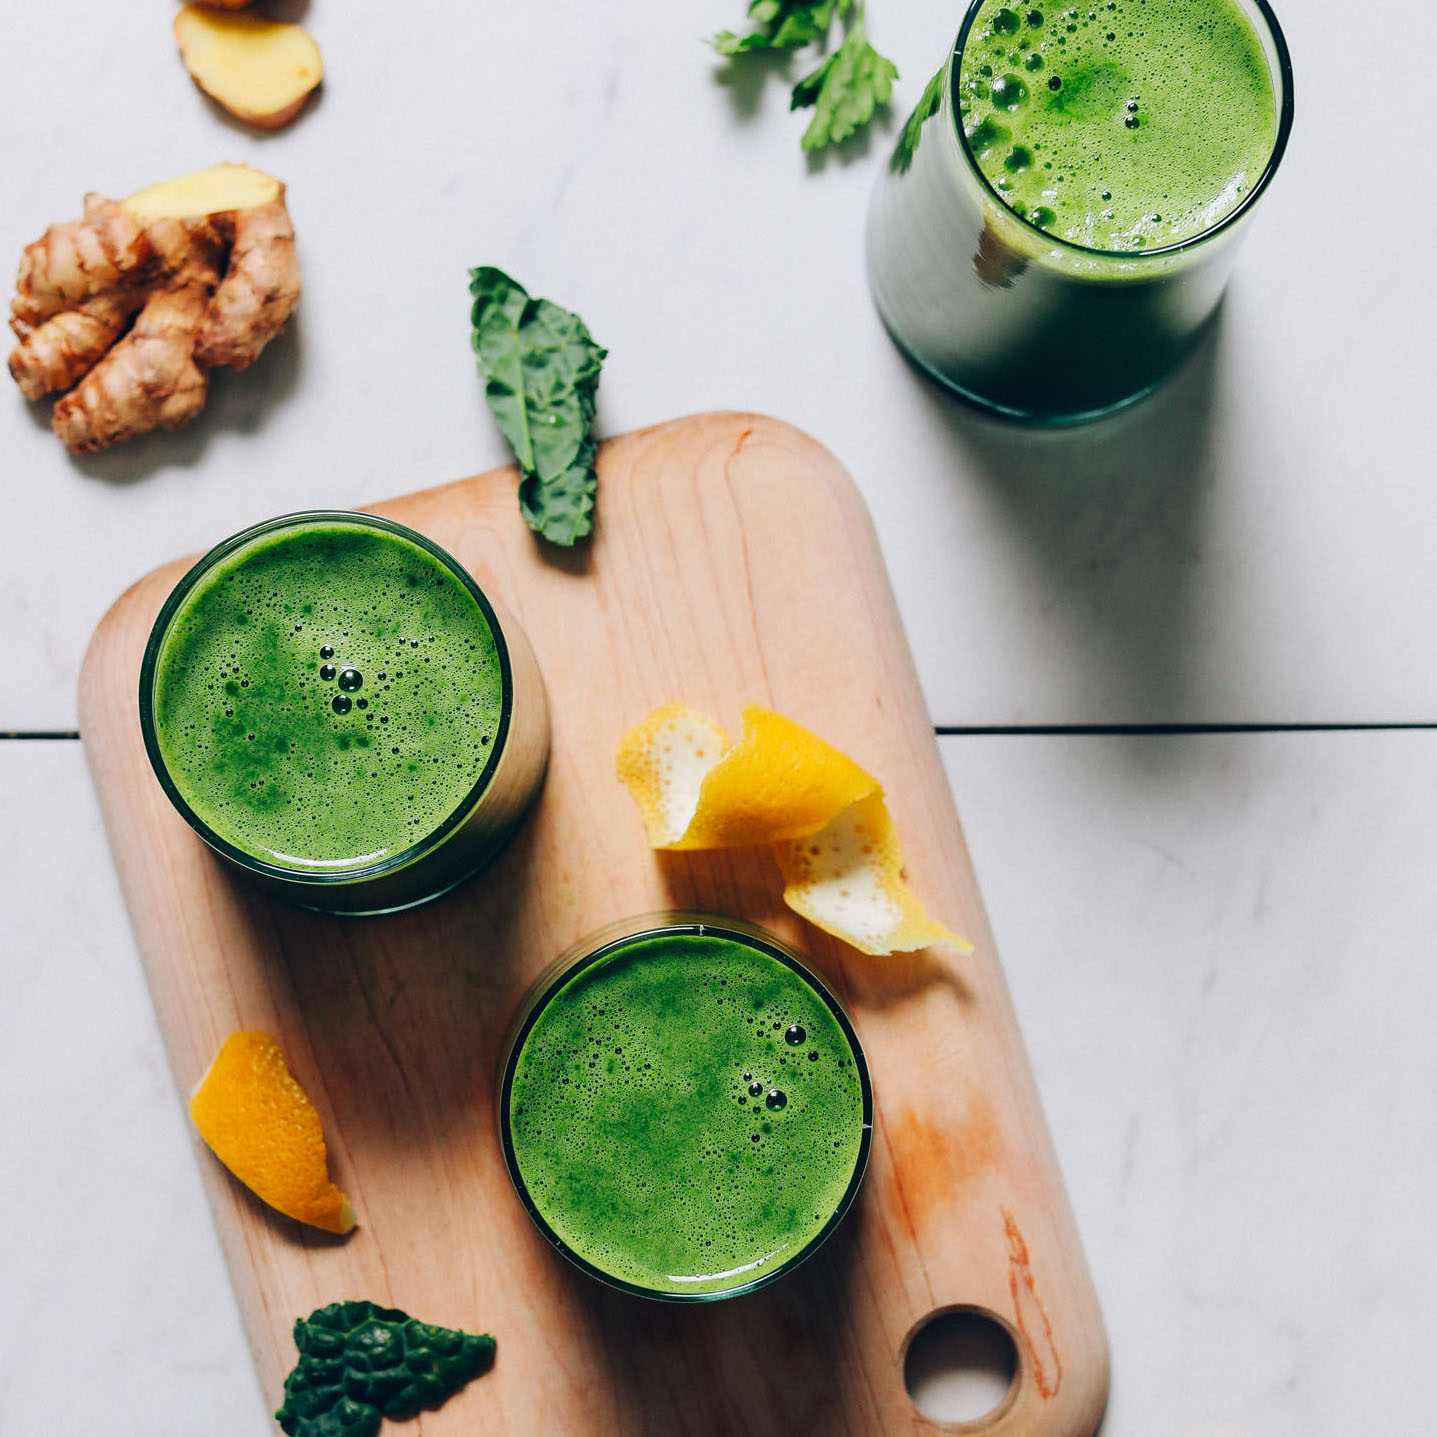 Rau cải xoăn hay còn gọi là kale xuất hiện trong khá nhiều món nước ép ngon miệng và bổ dưỡng.